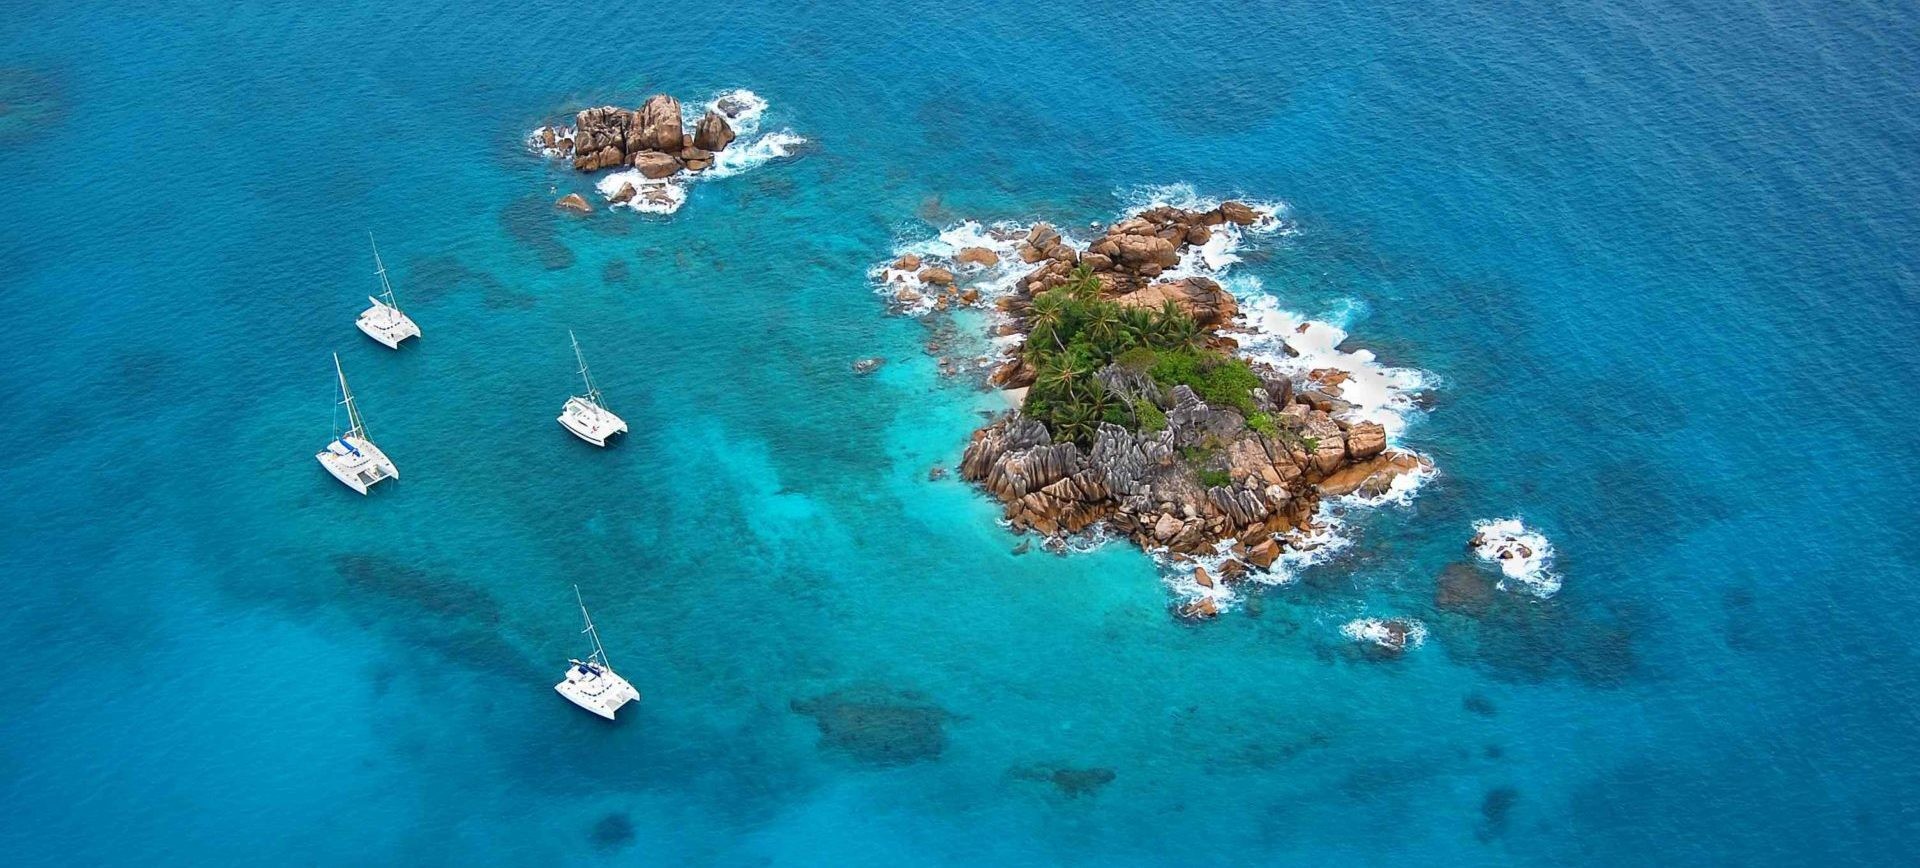 Seychelles, Indian Ocean: Catamaran cruise